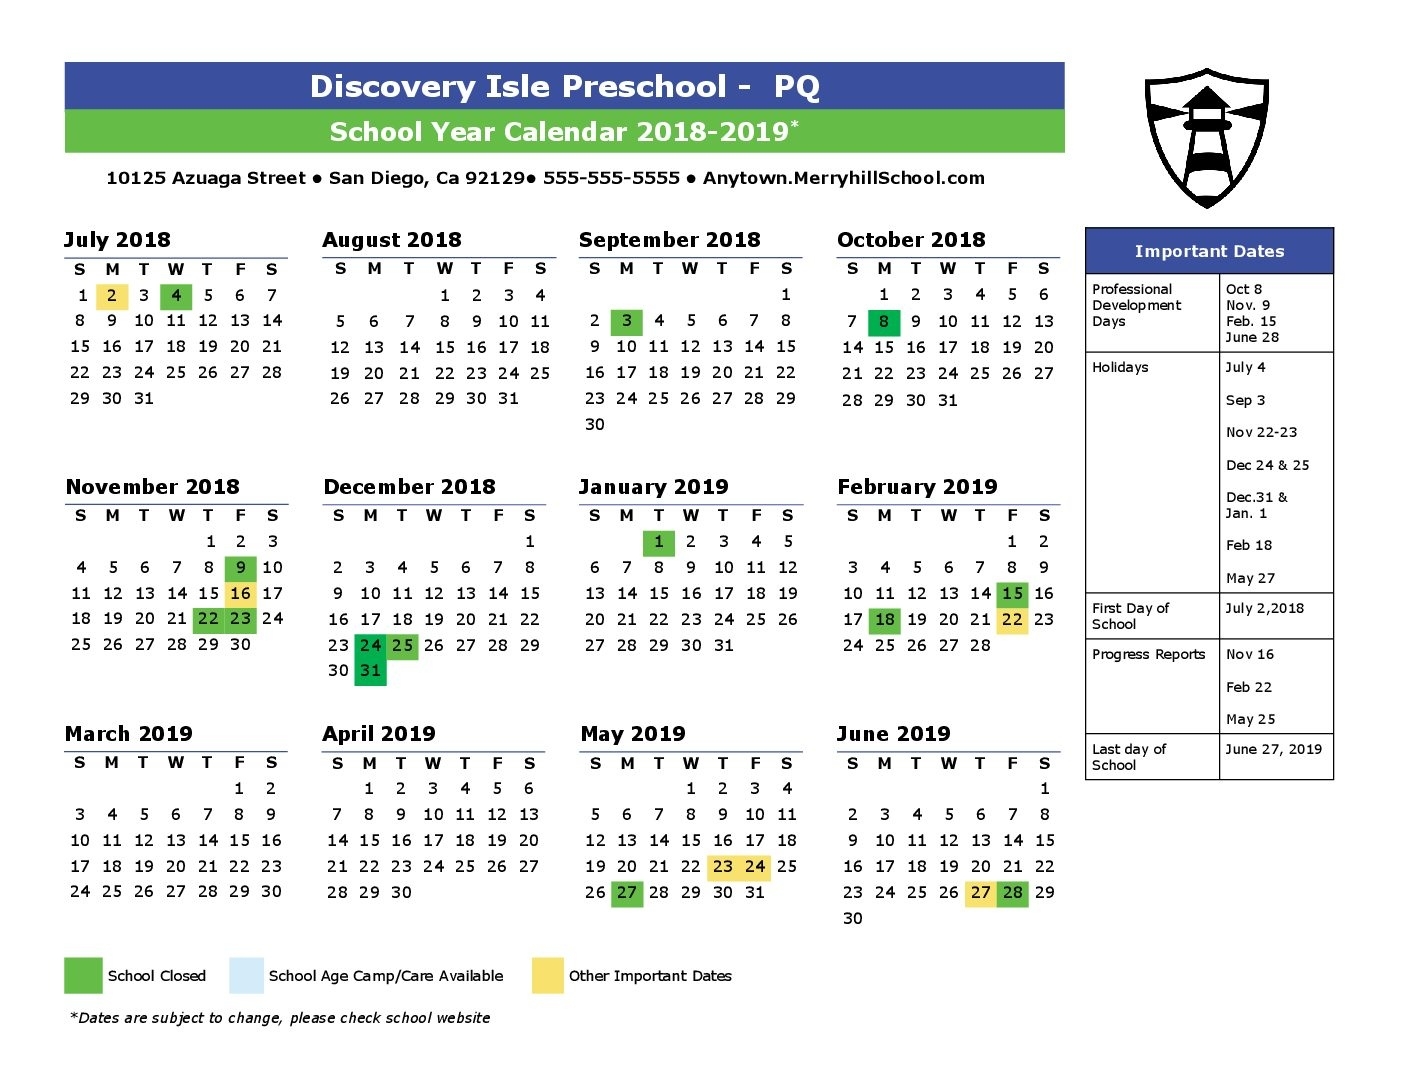 2018-2019 School Year Calendar - Discovery Isle School Calendar In San Diego